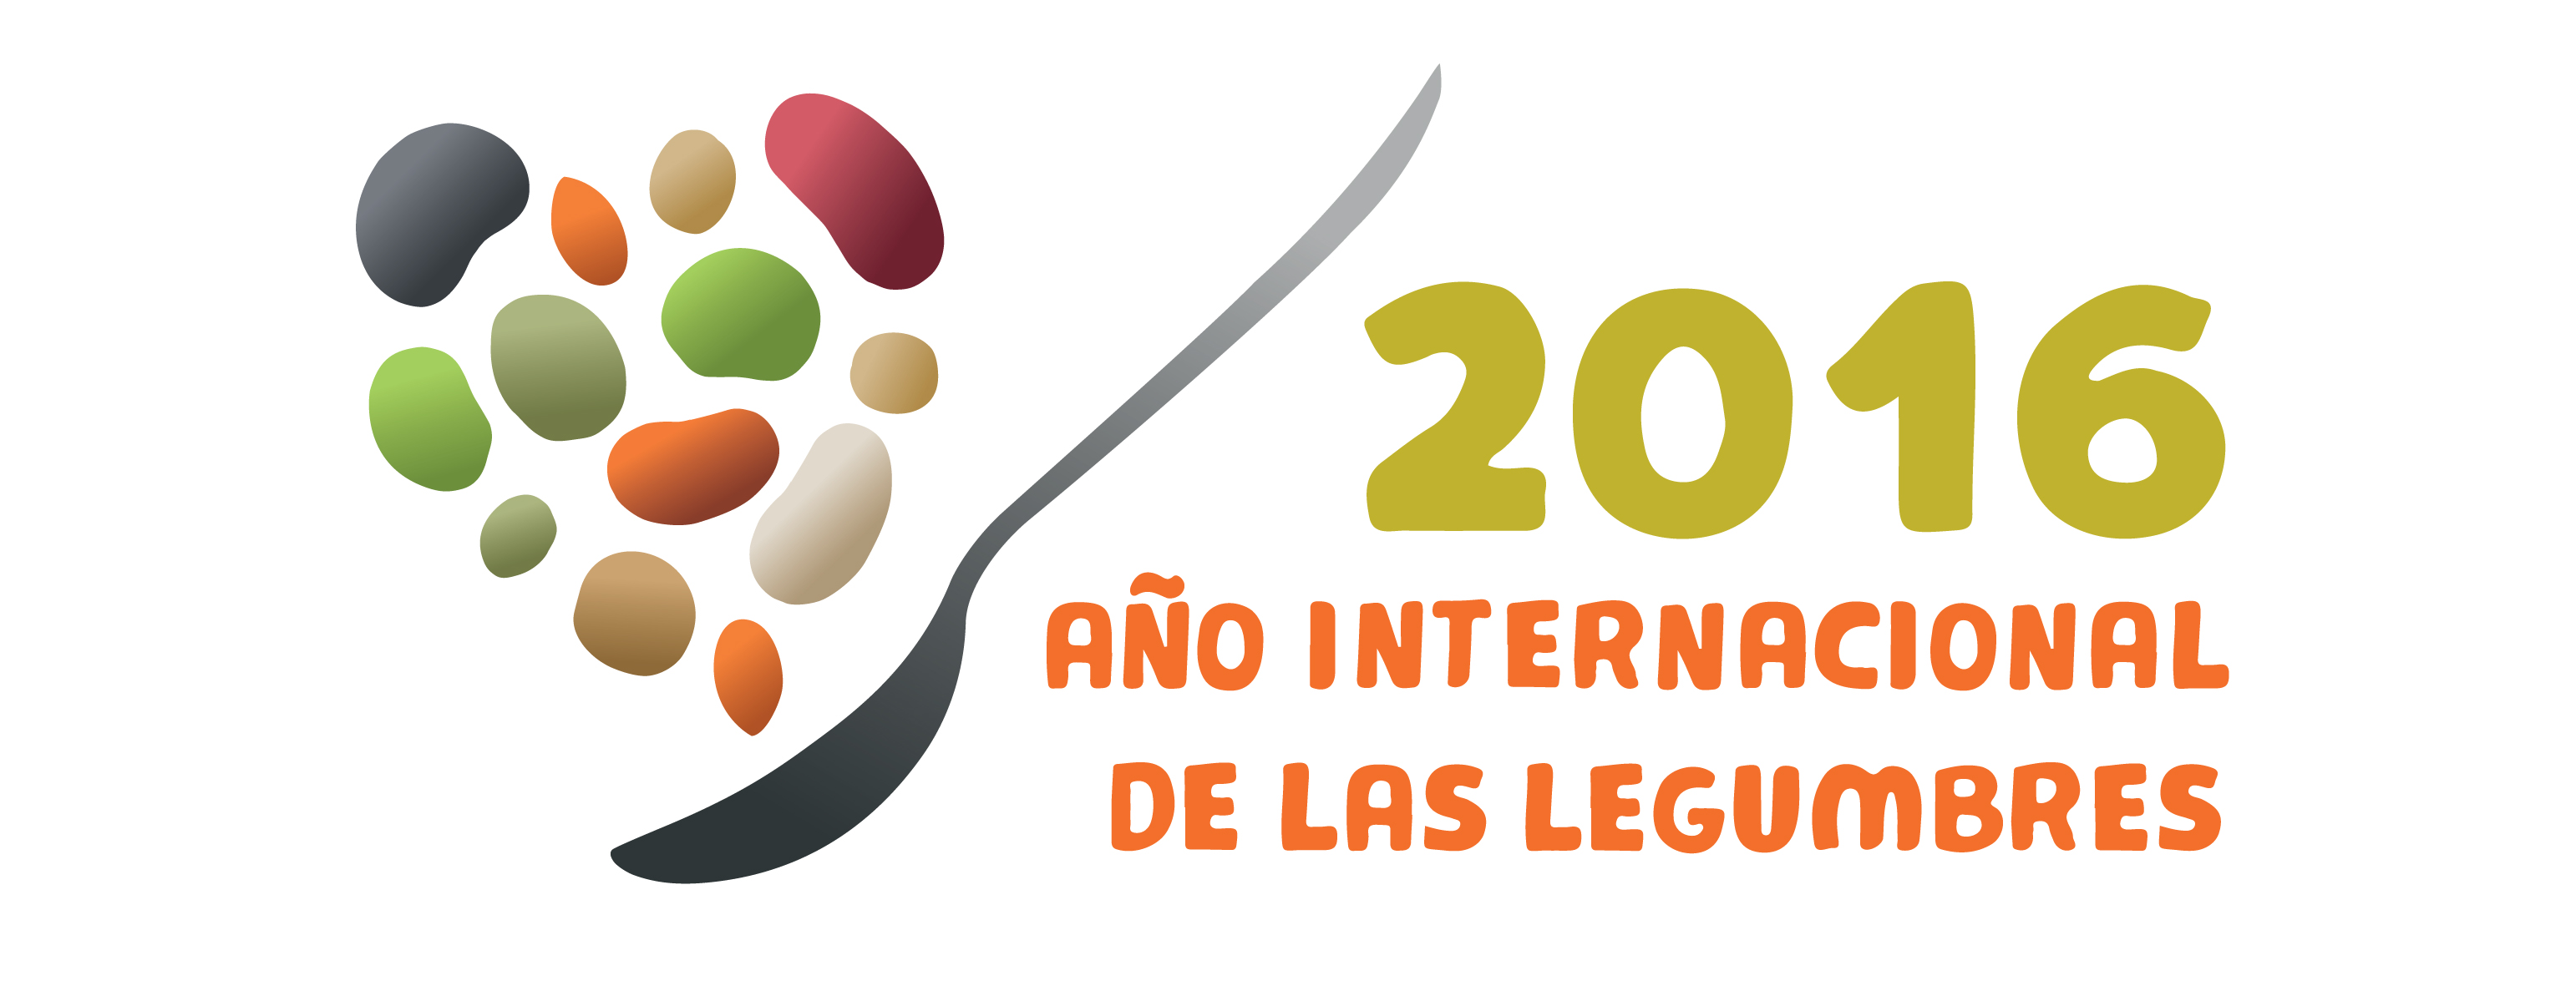 2016 AÑO INTERNACIONAL DE LAS LEGUMBRES